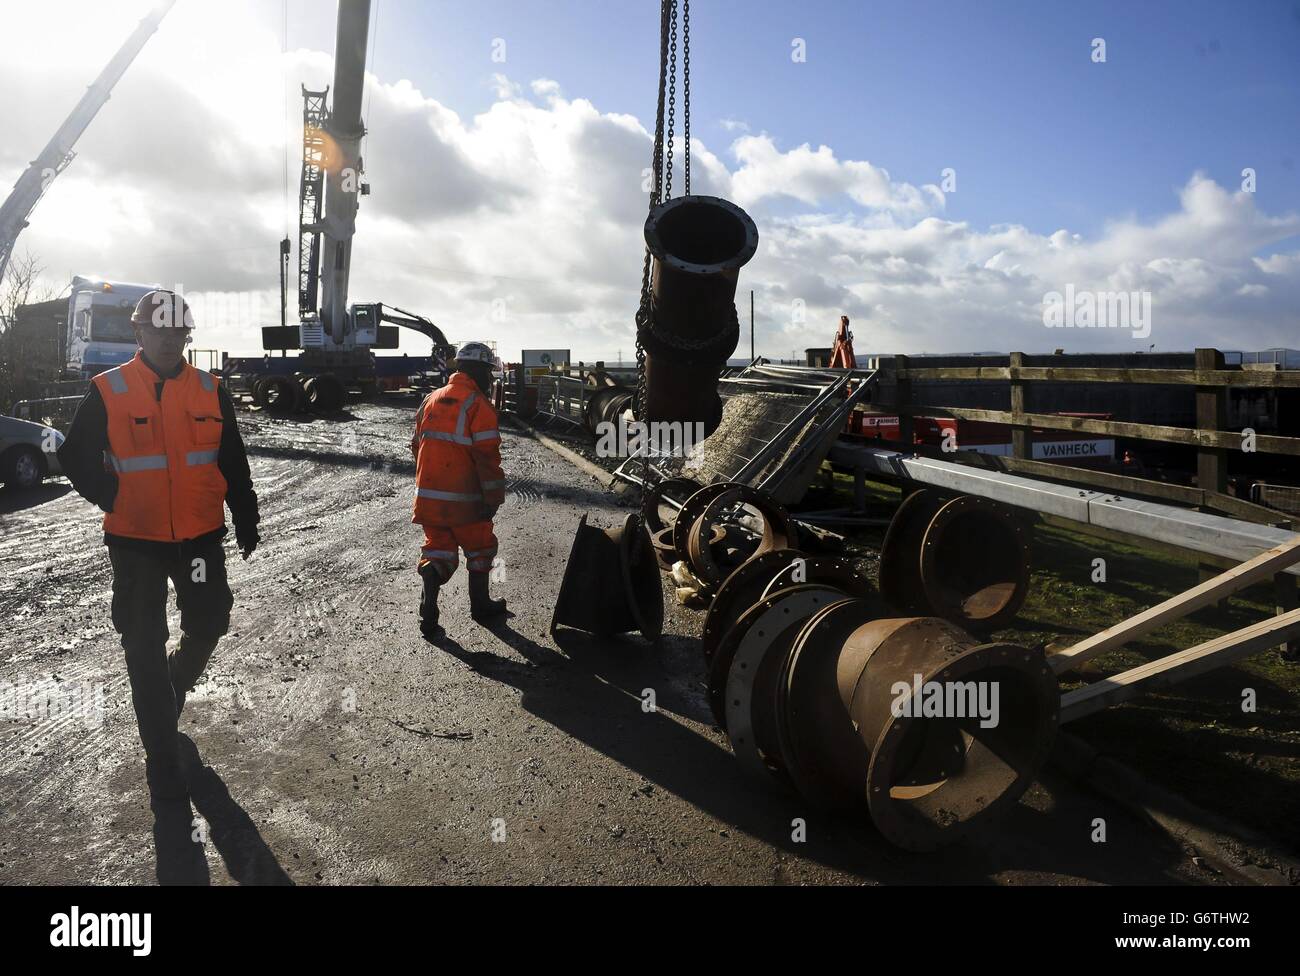 Los trabajadores mueven enormes tuberías de agua mientras se establece una enorme estación de bombeo holandesa importada en Dunball, cerca de Bridgwater, Somerset, en la base del drenaje Sedgemoor del rey, que es un canal de drenaje artificial que corre desde los niveles de Somerset. Foto de stock